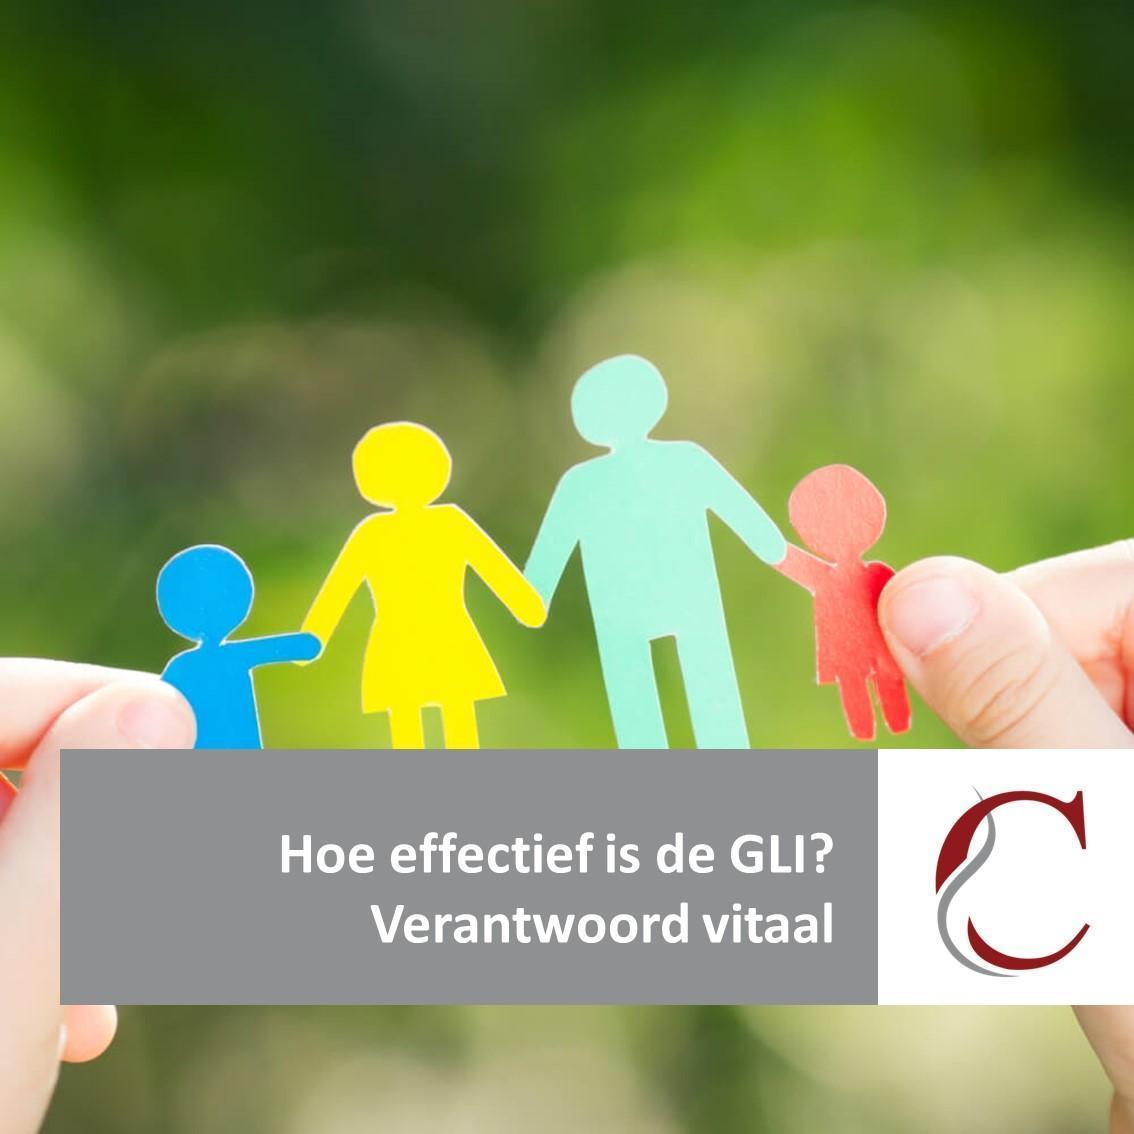 Hoe effectief is de GLI (gecombineerde leefstijl interventie)?